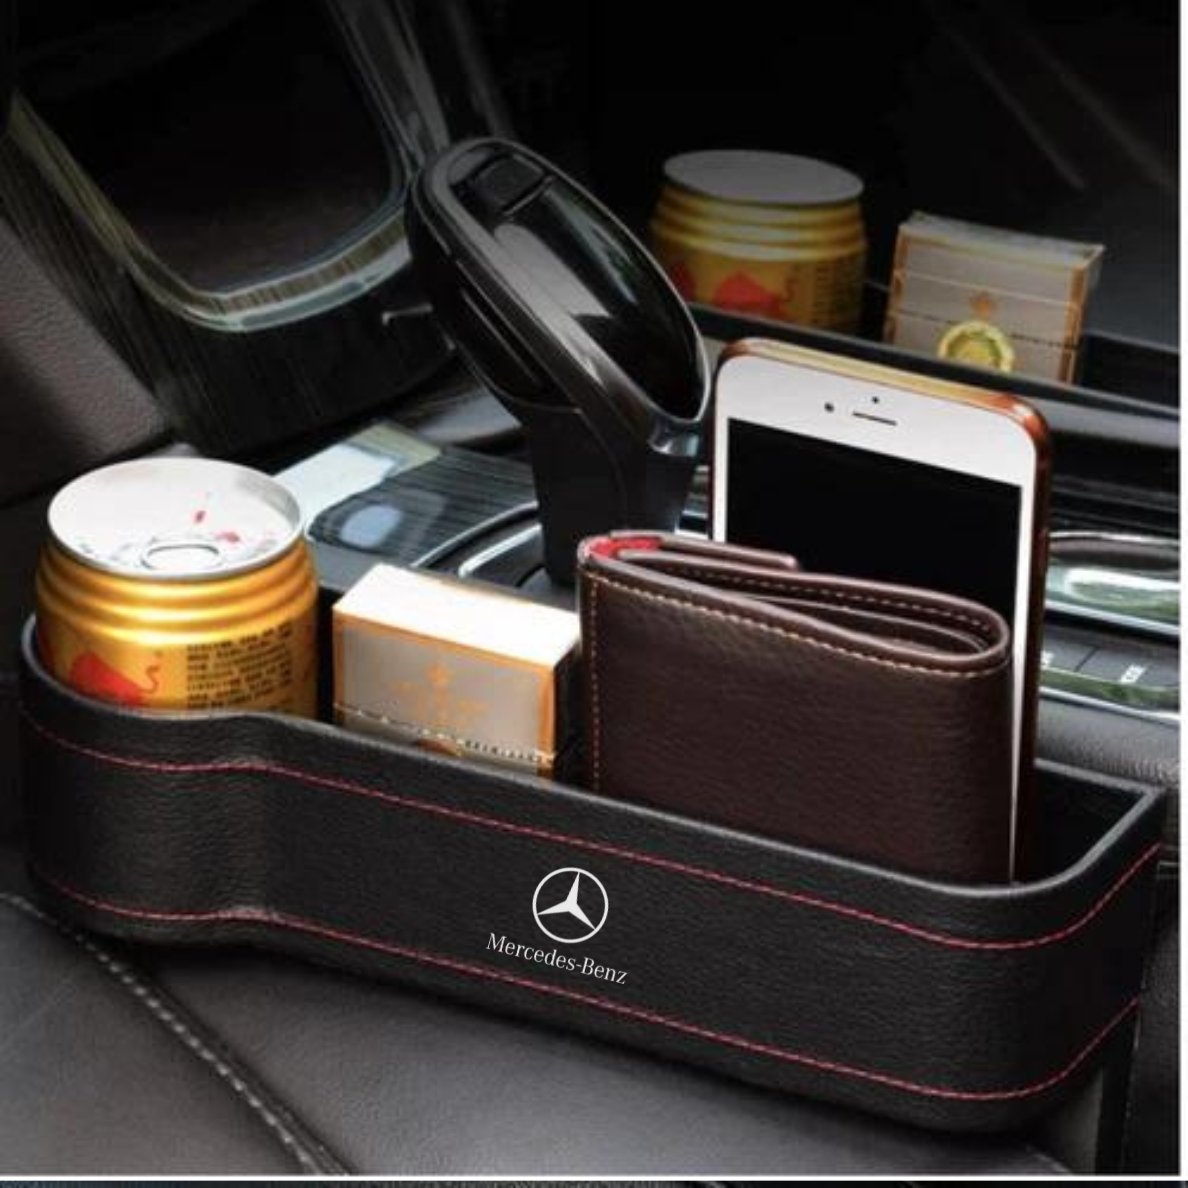 Mercedes Benz Car Purse Holder: Organize Essentials